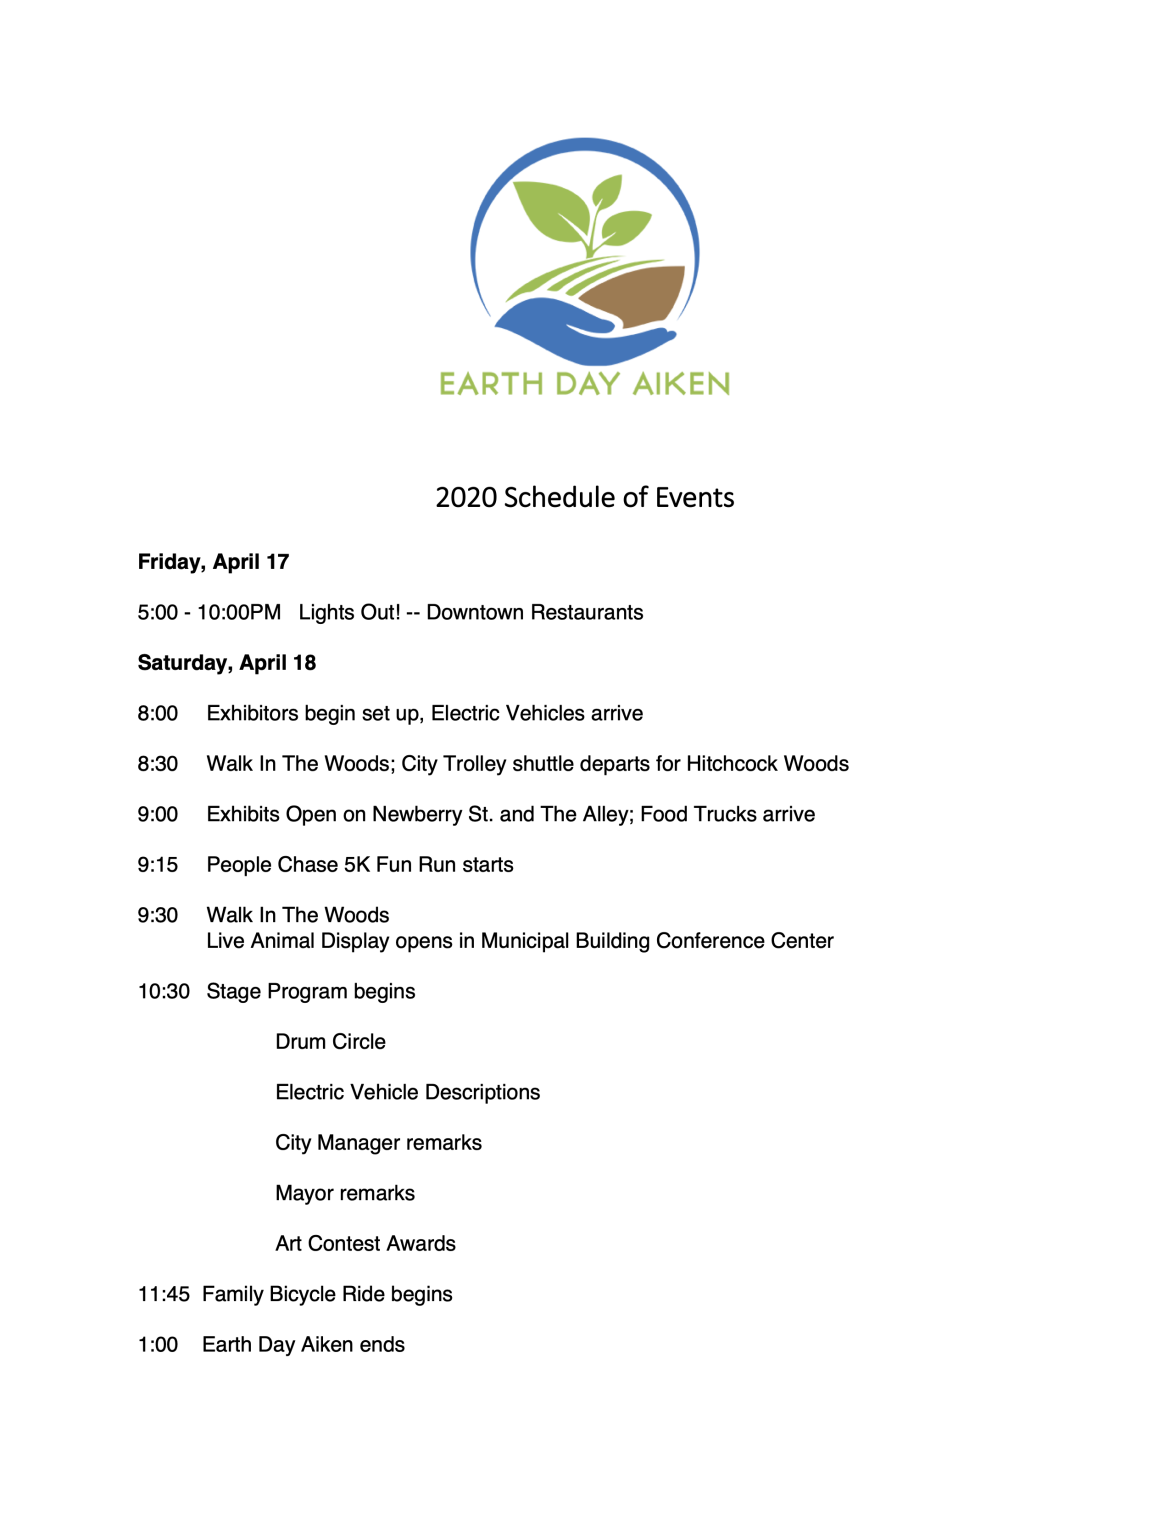 Event Schedule – Earth Day Aiken